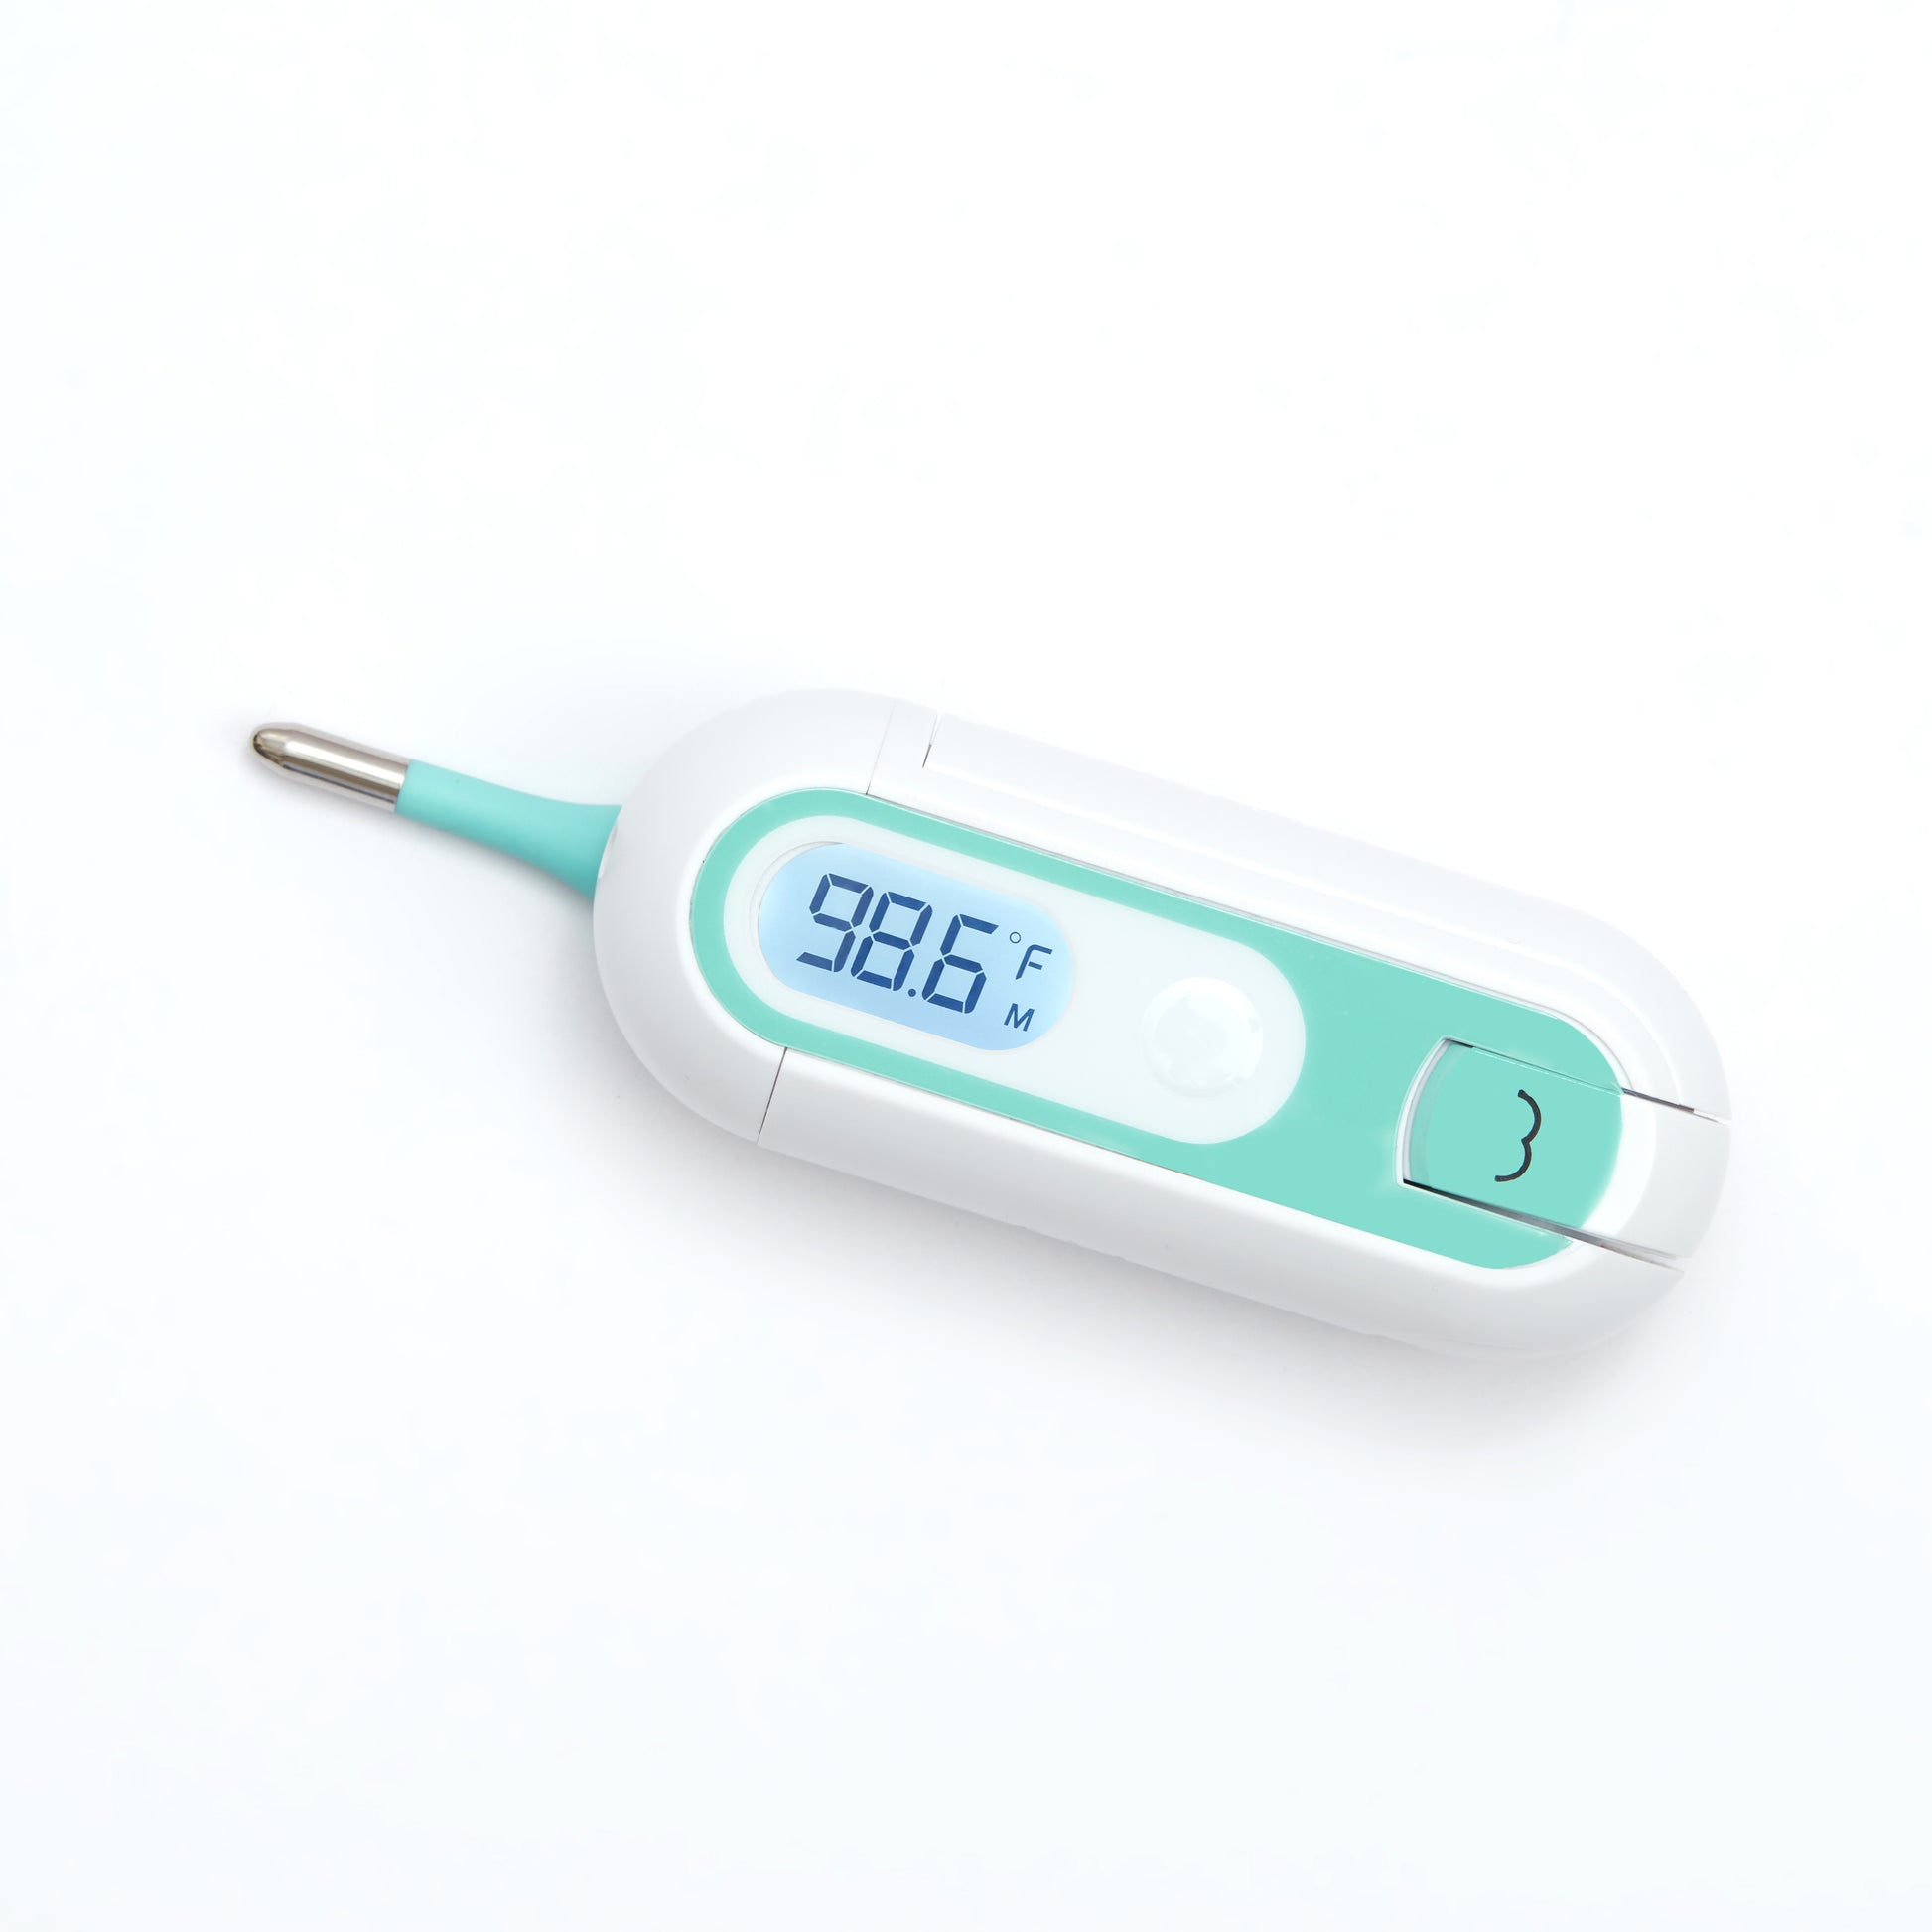 Frida Baby - 3 in 1 True Temp Thermometer - BambiniJO | Buy Online | Jordan